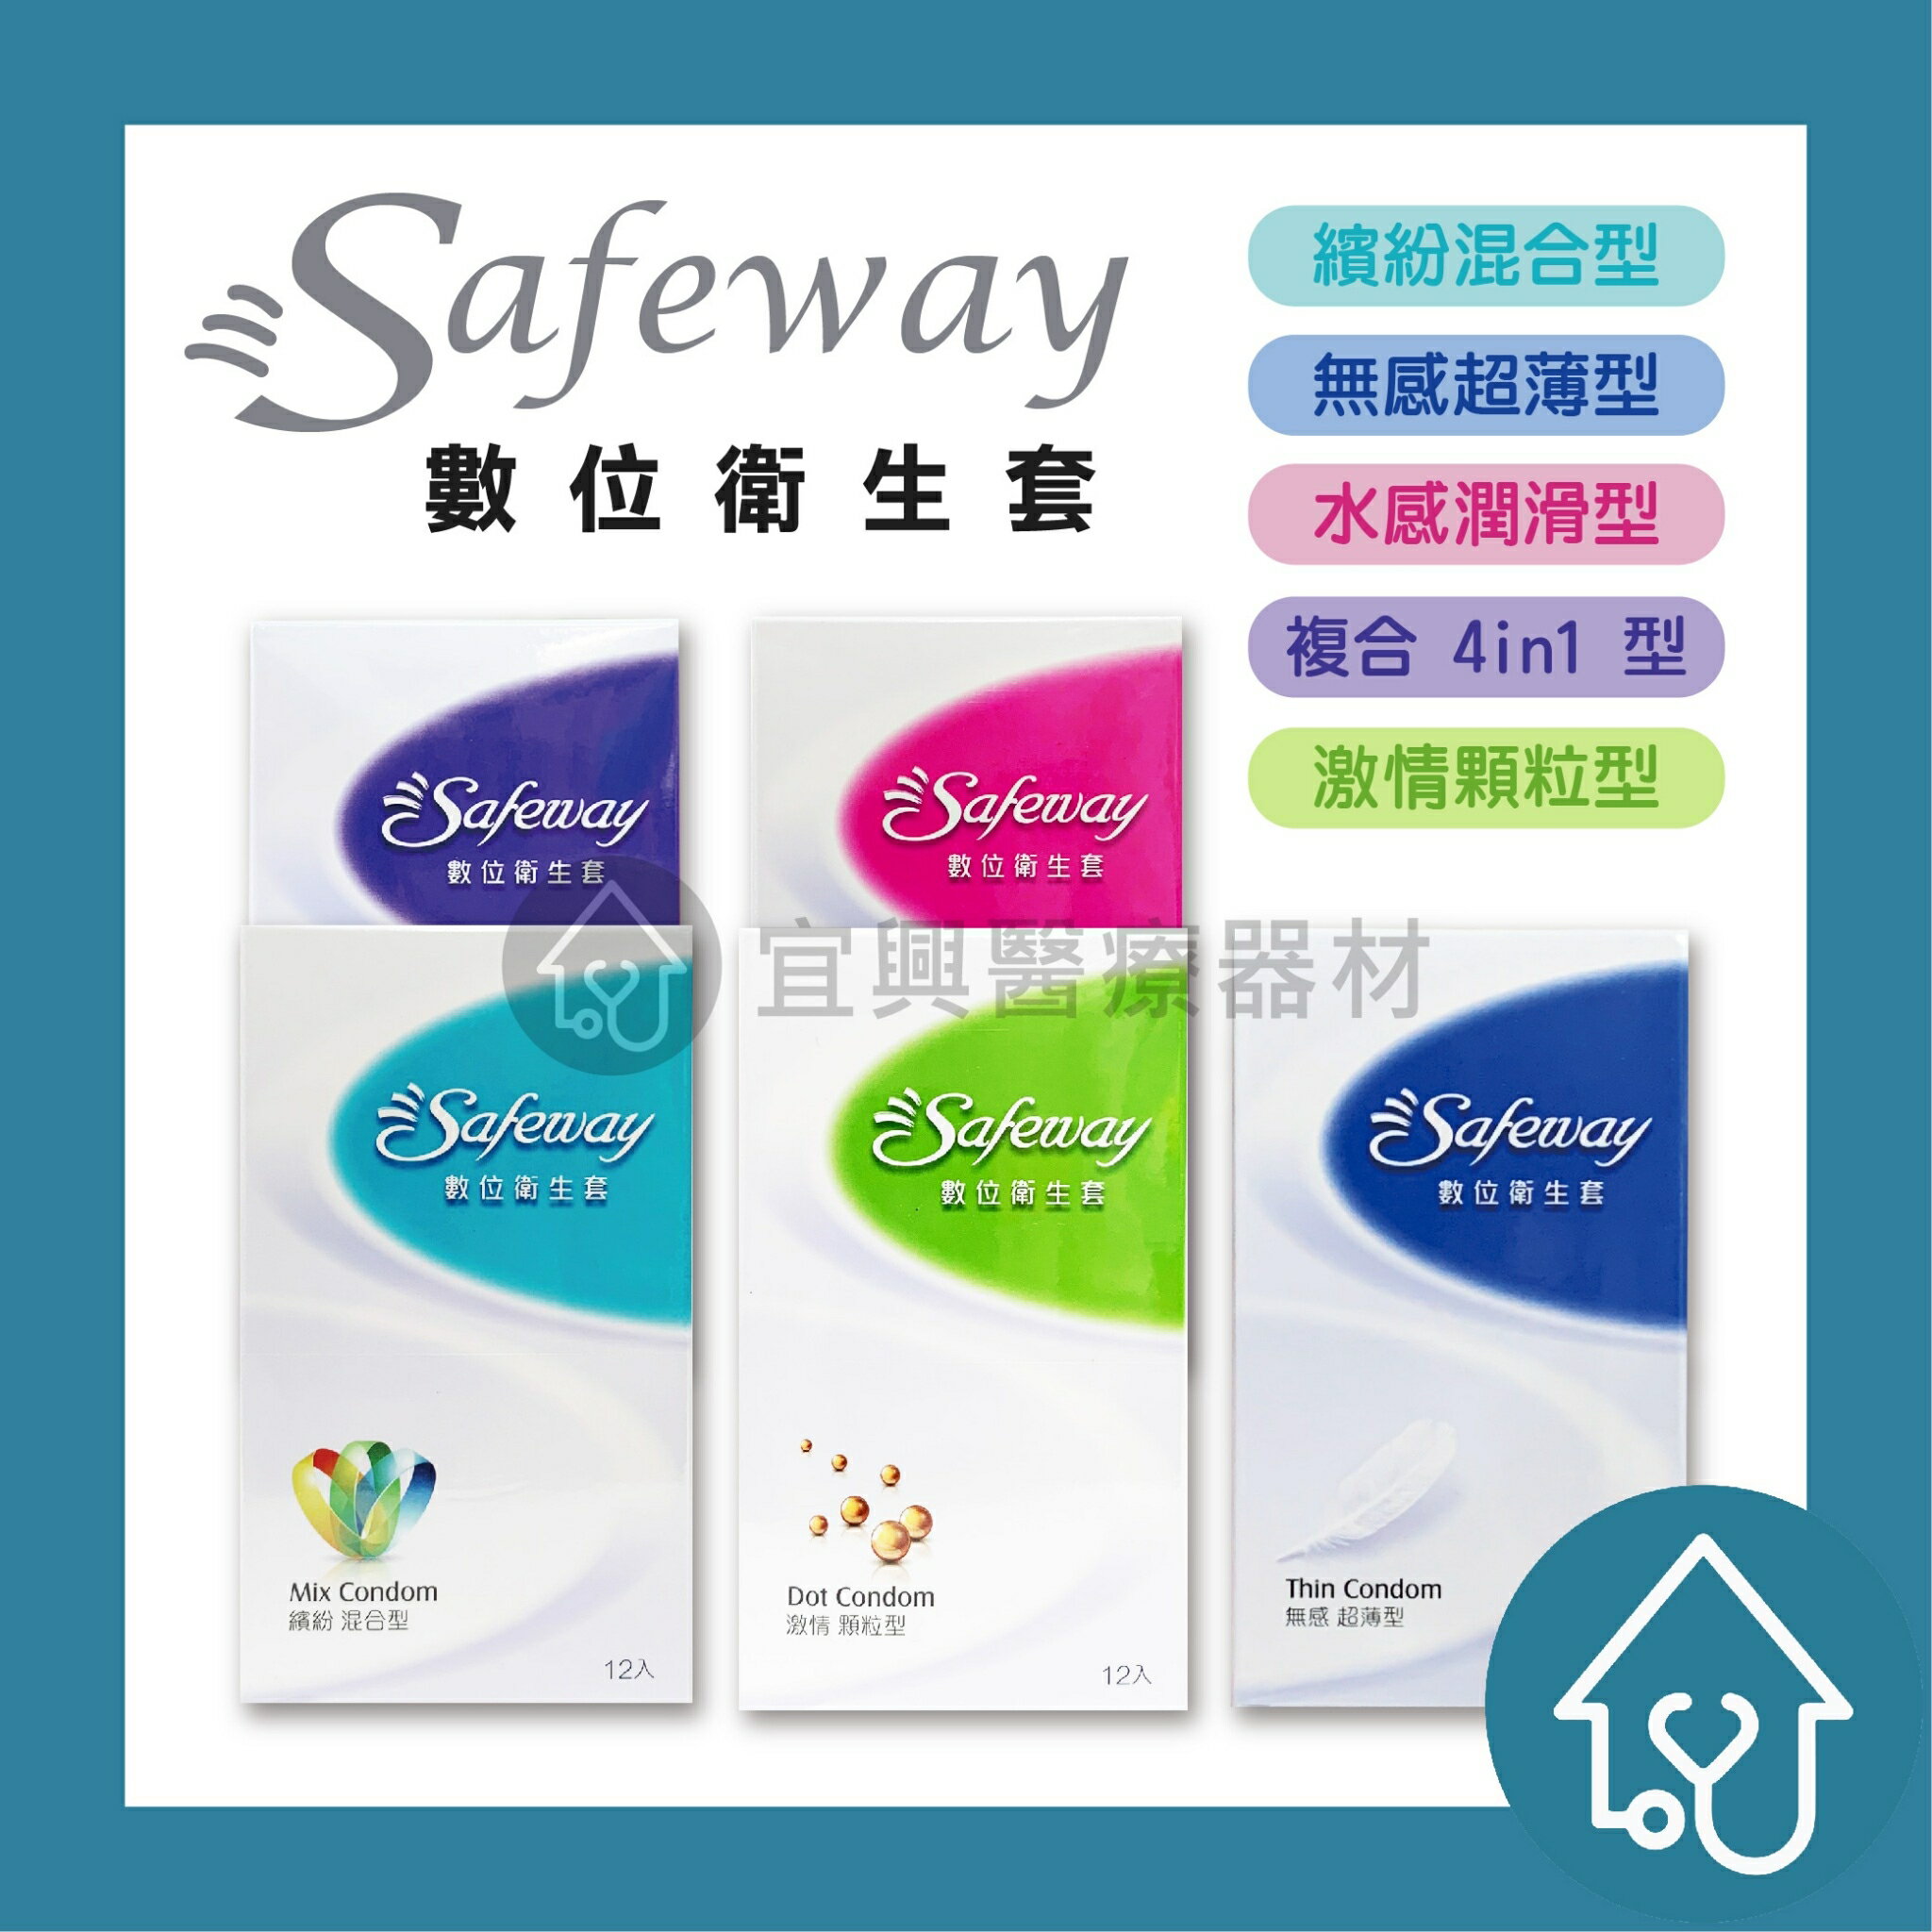 Safeway數位衛生套 保險套12入/盒 : 繽紛混合、無感超薄、水感潤滑、複合4in1、激情顆粒